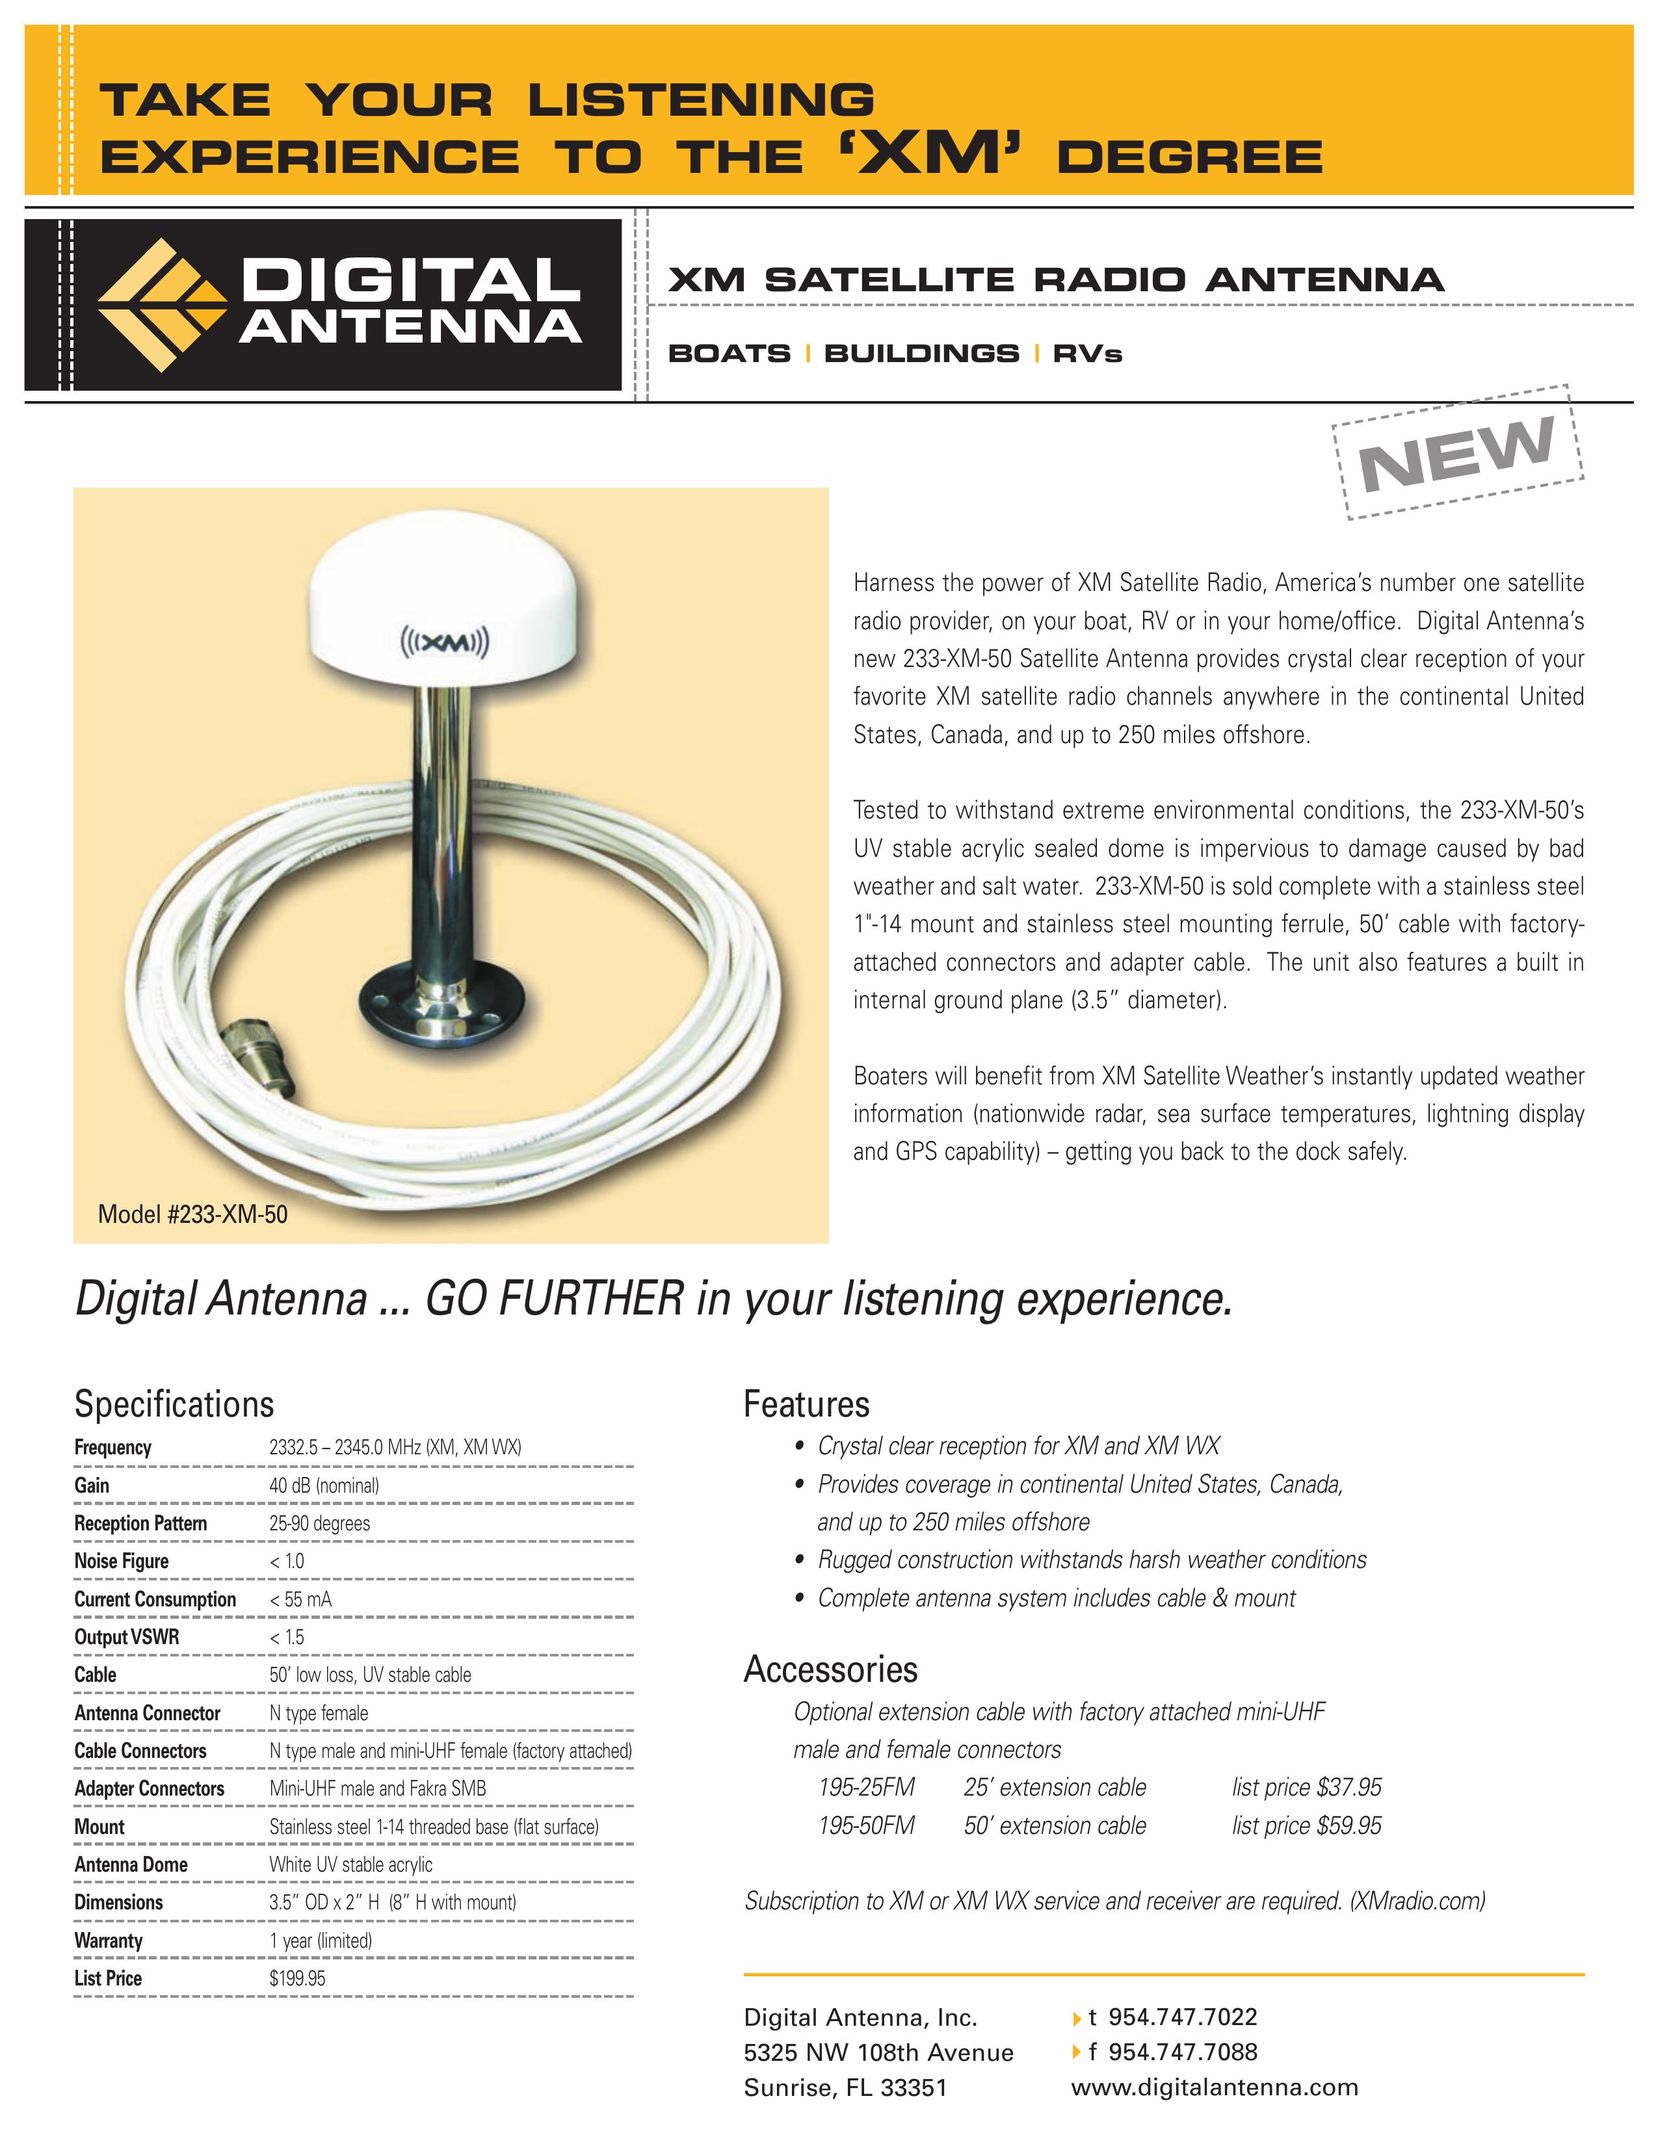 Digital Antenna 233-XM-50 Satellite Radio User Manual